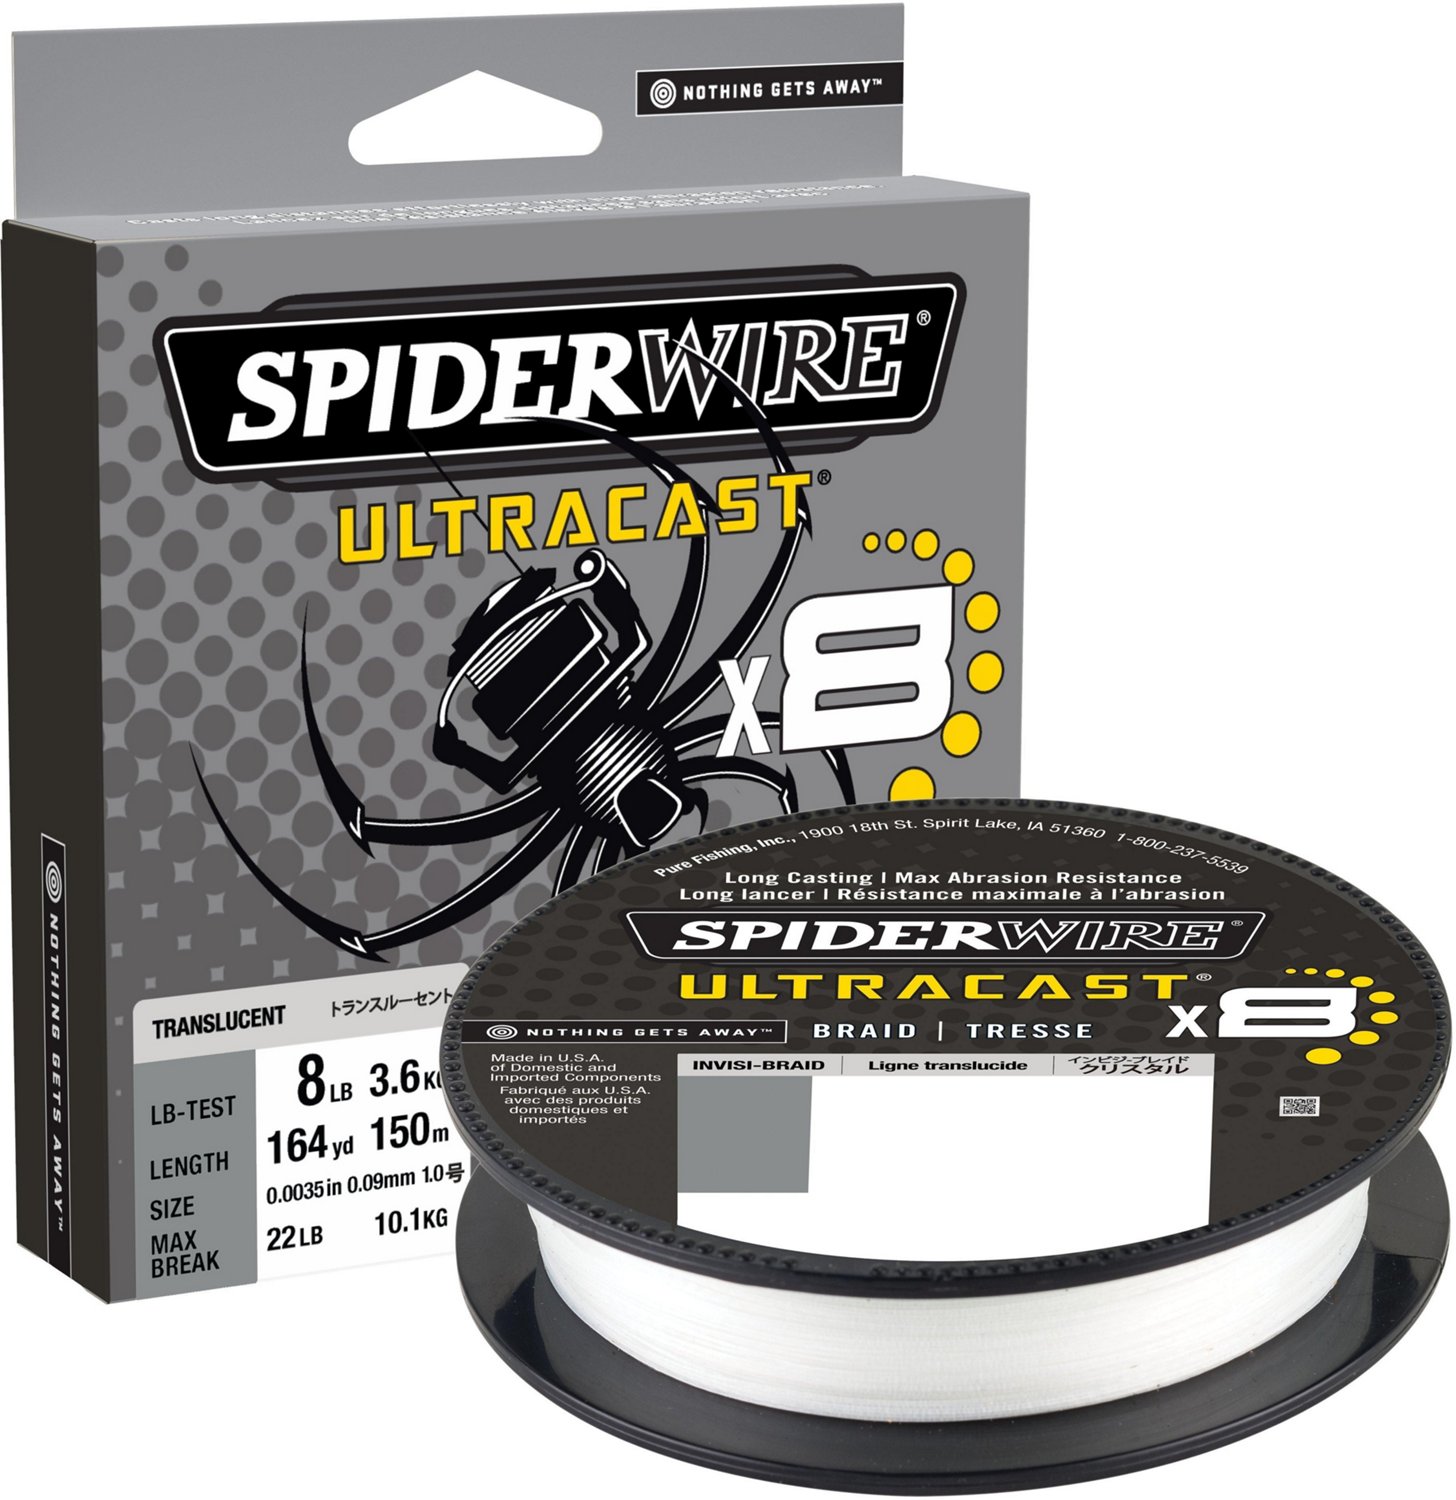 Spiderwire Ultracast Invisi-Braid